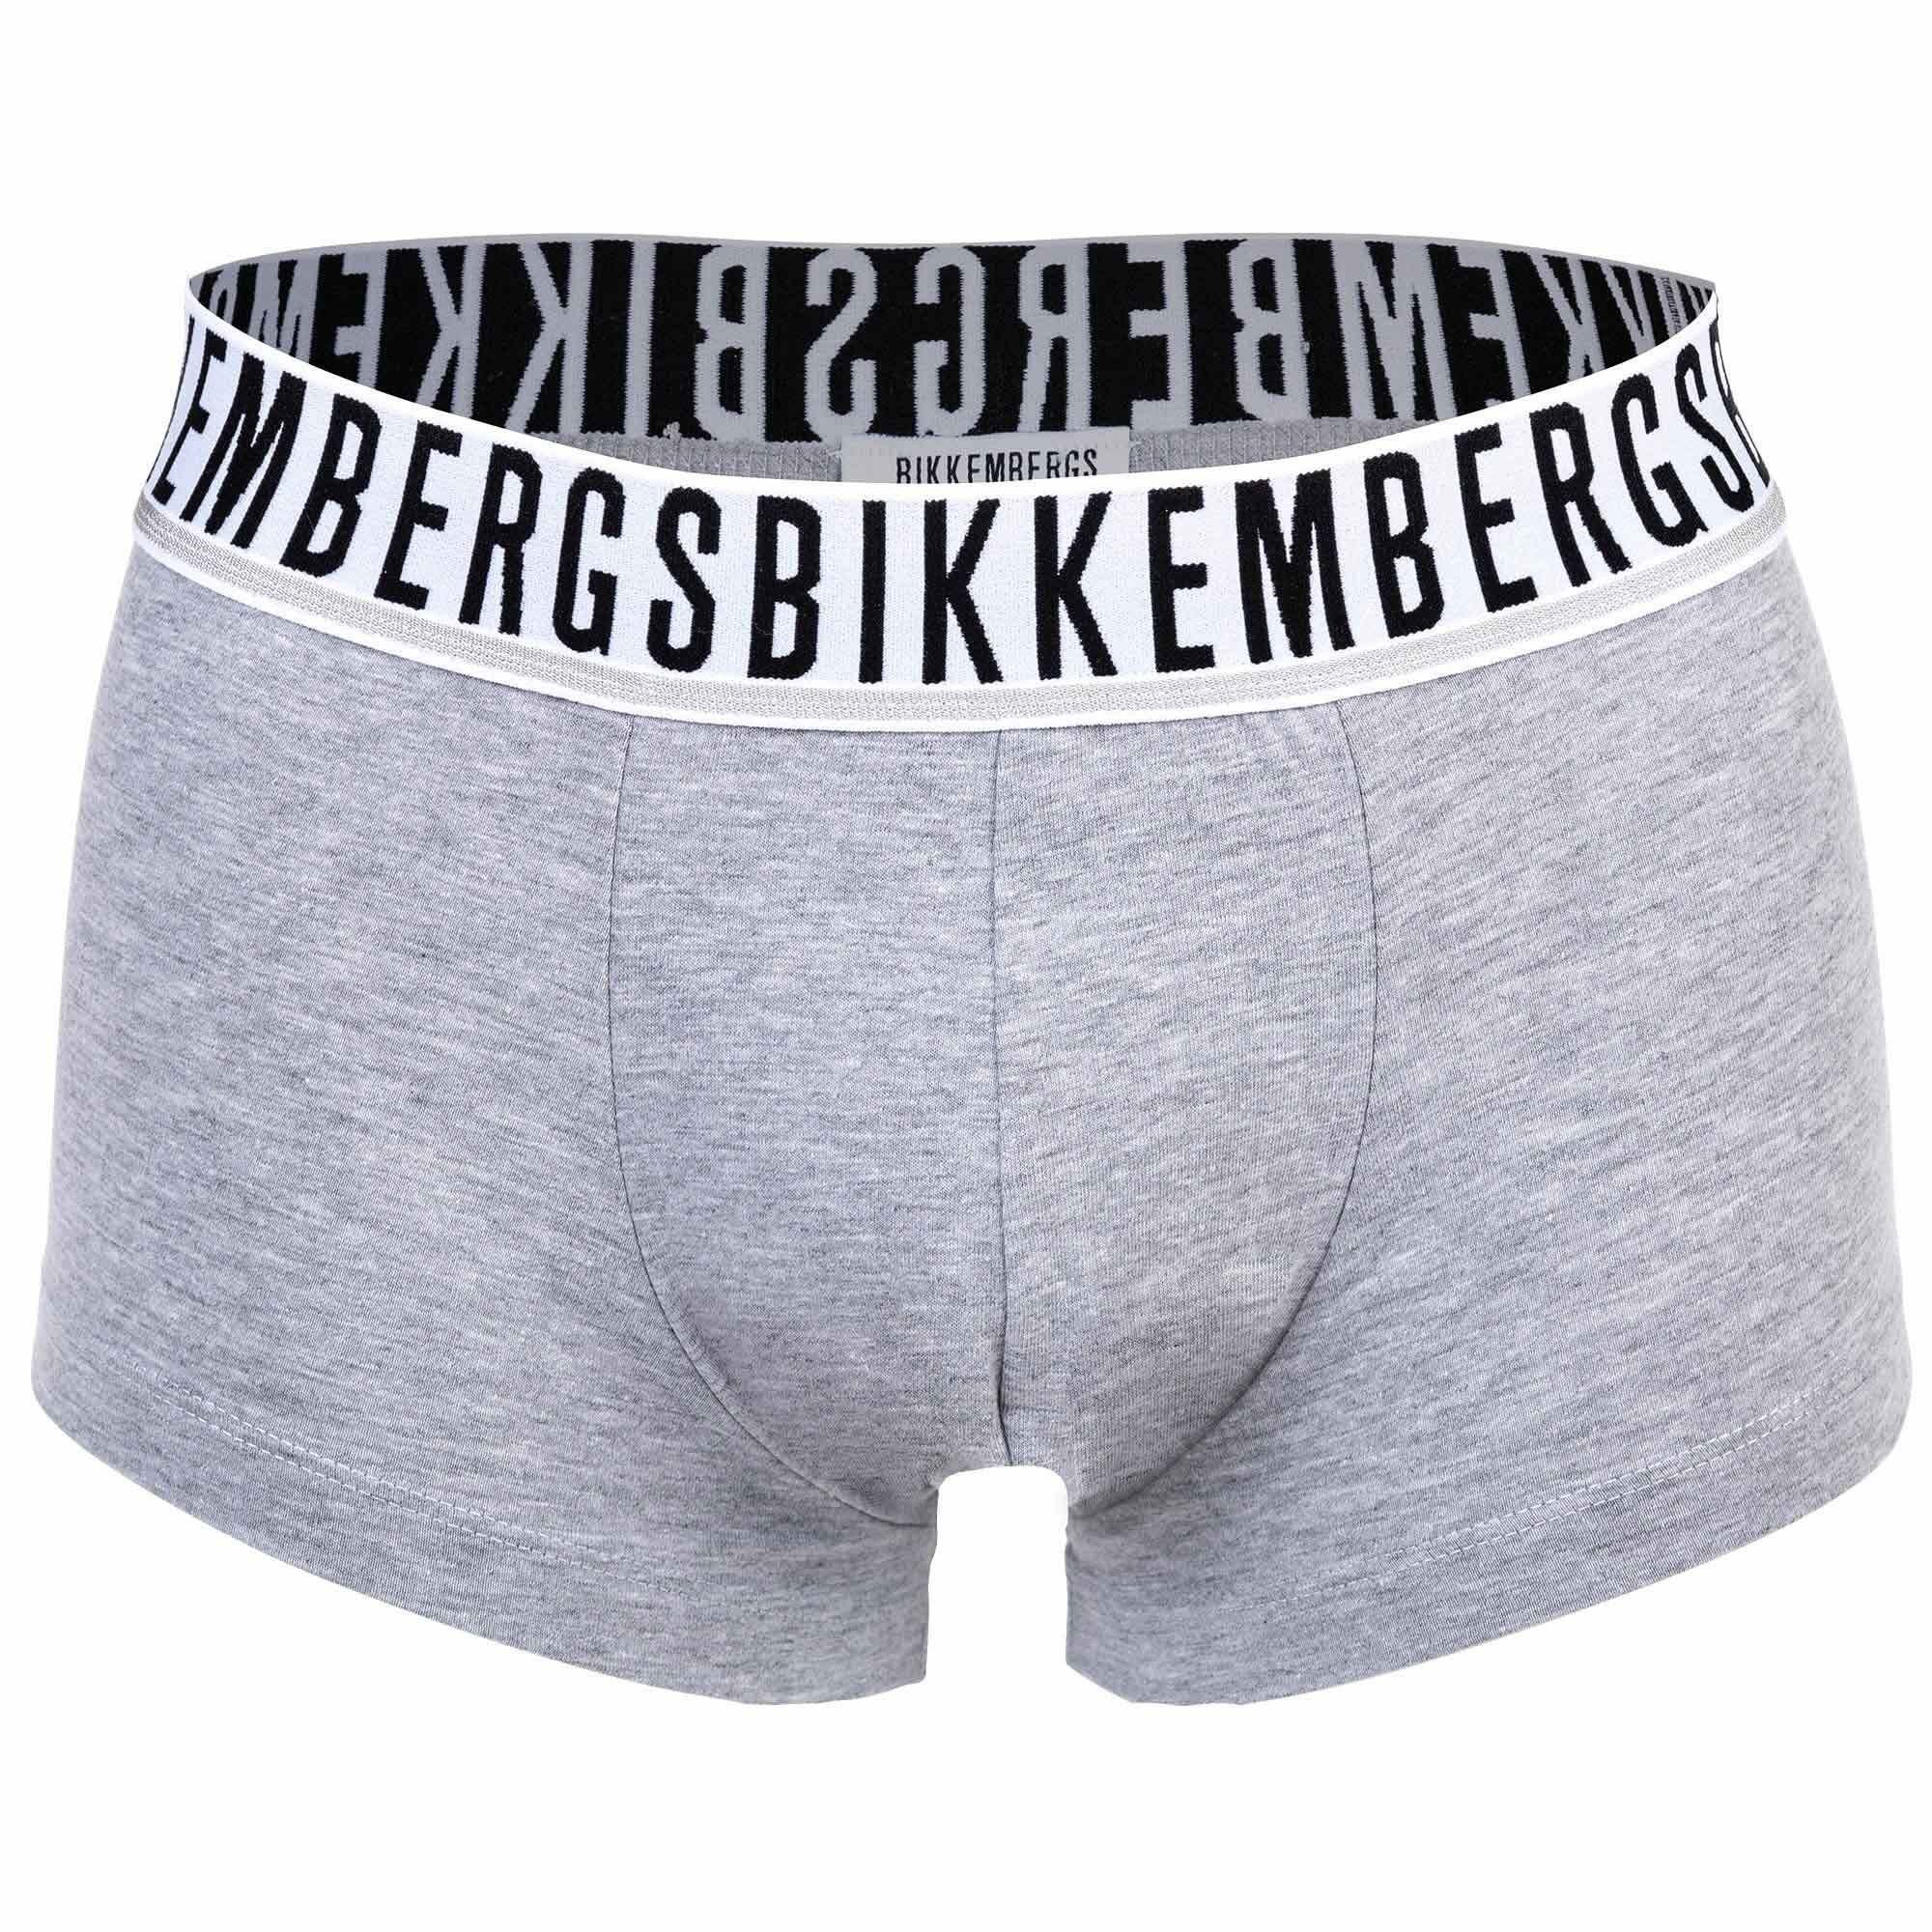 Boxershorts, - TRUNKS Herren Boxer Grau 2er Bikkembergs BI-PACK Pack